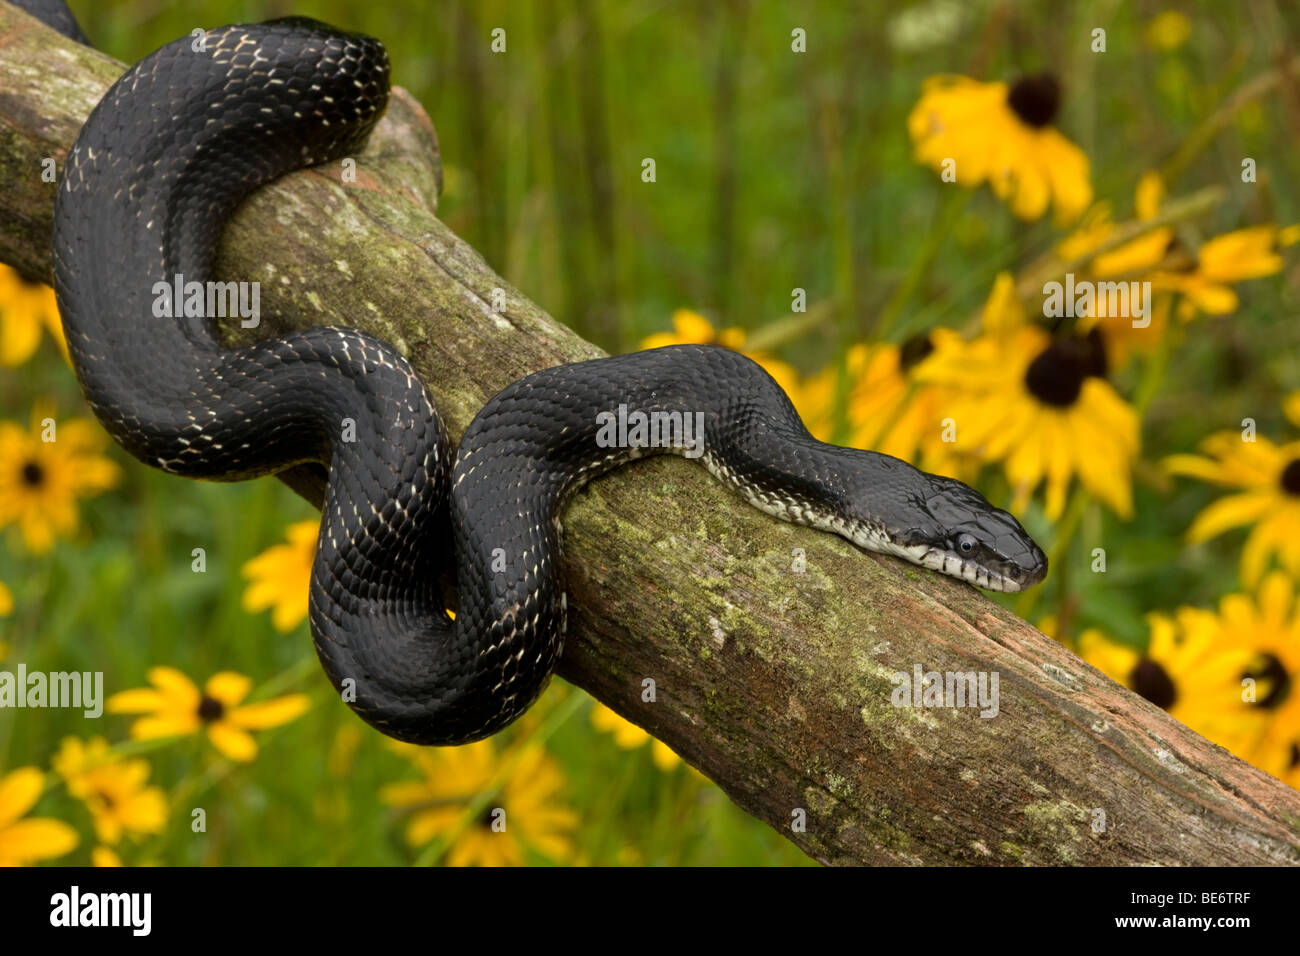 Eastern Ratsnake (Elaphe alleganiensis) also known as Black Ratsnake (Elaphe obsoleta) - New York - USA Stock Photo